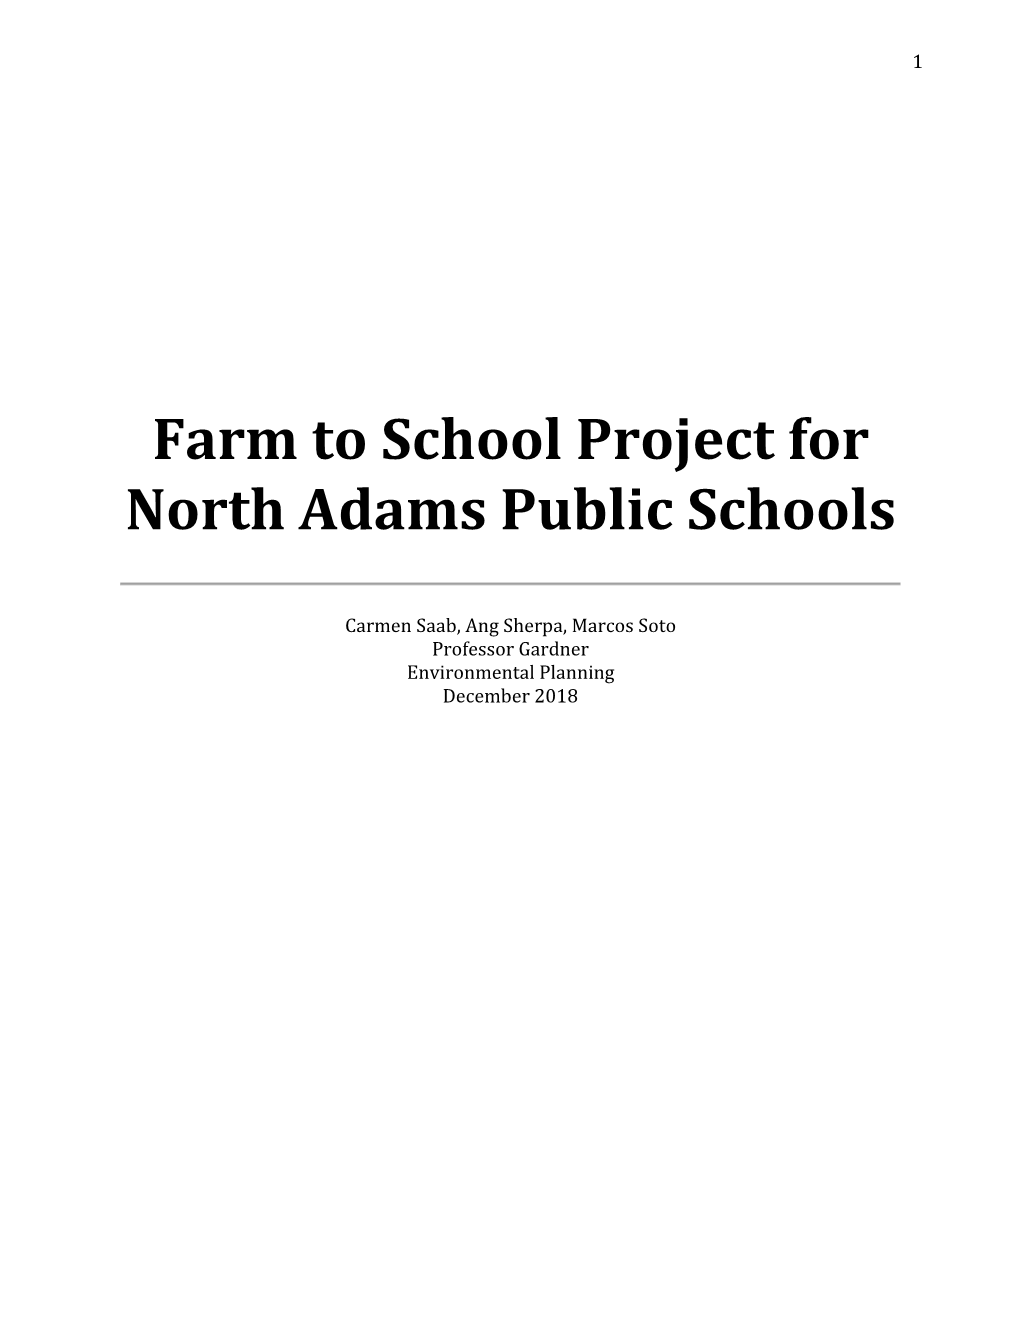 Farm to School Project for North Adams Public Schools